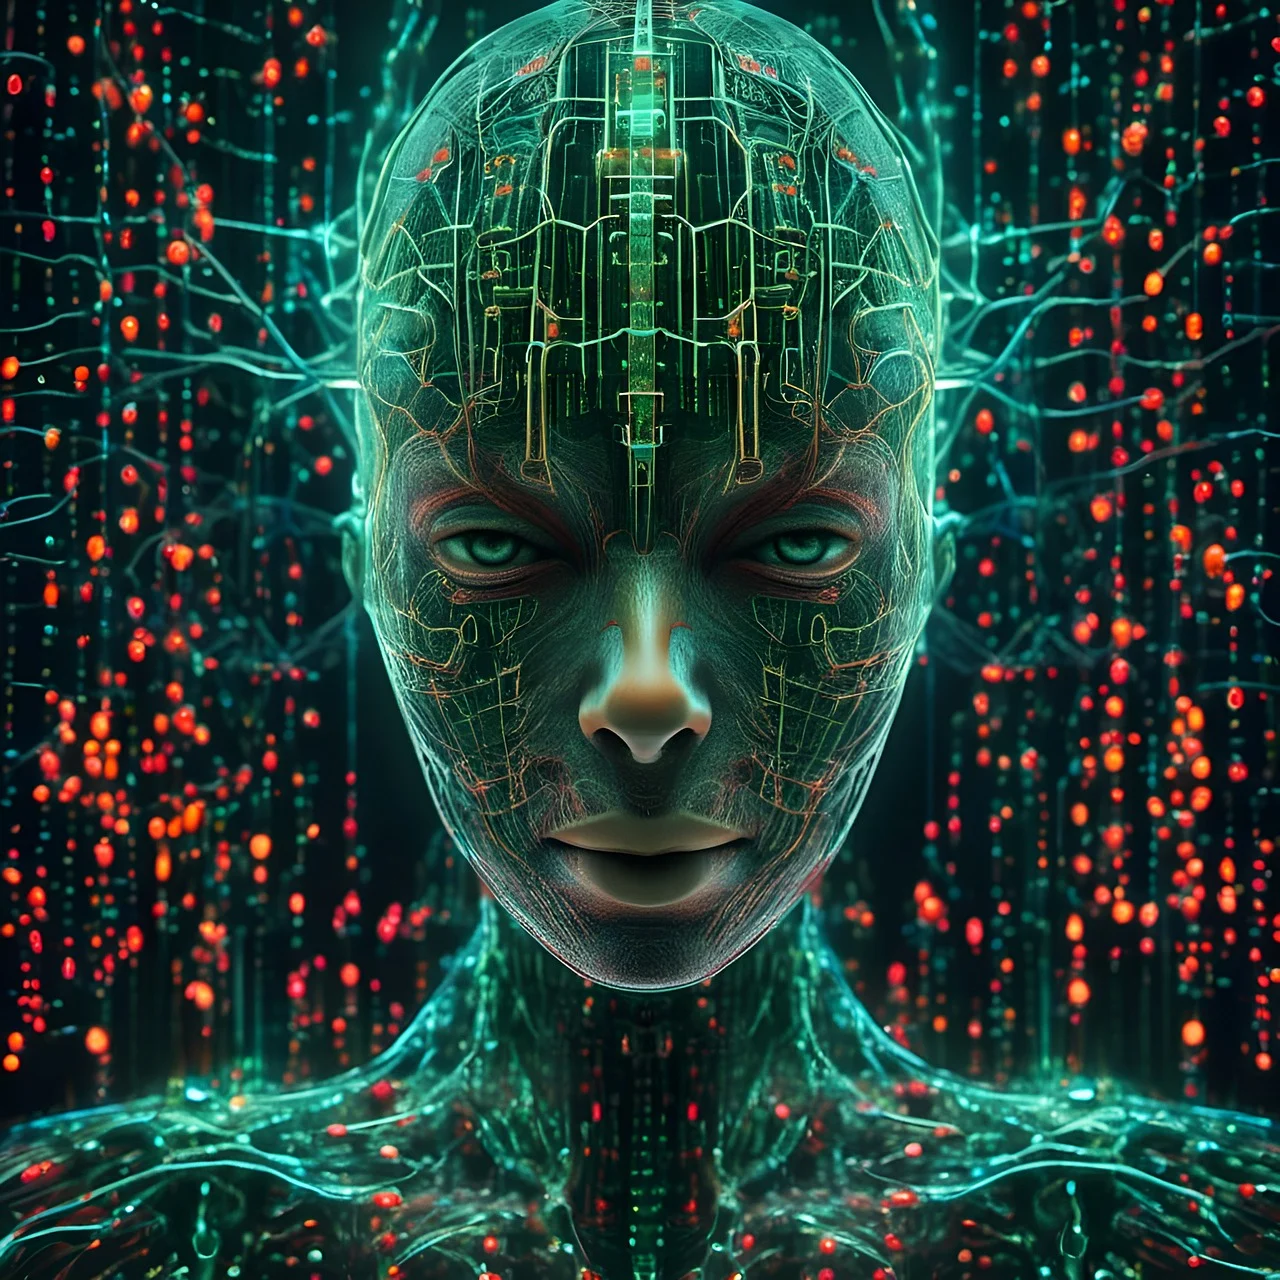 The future of AI